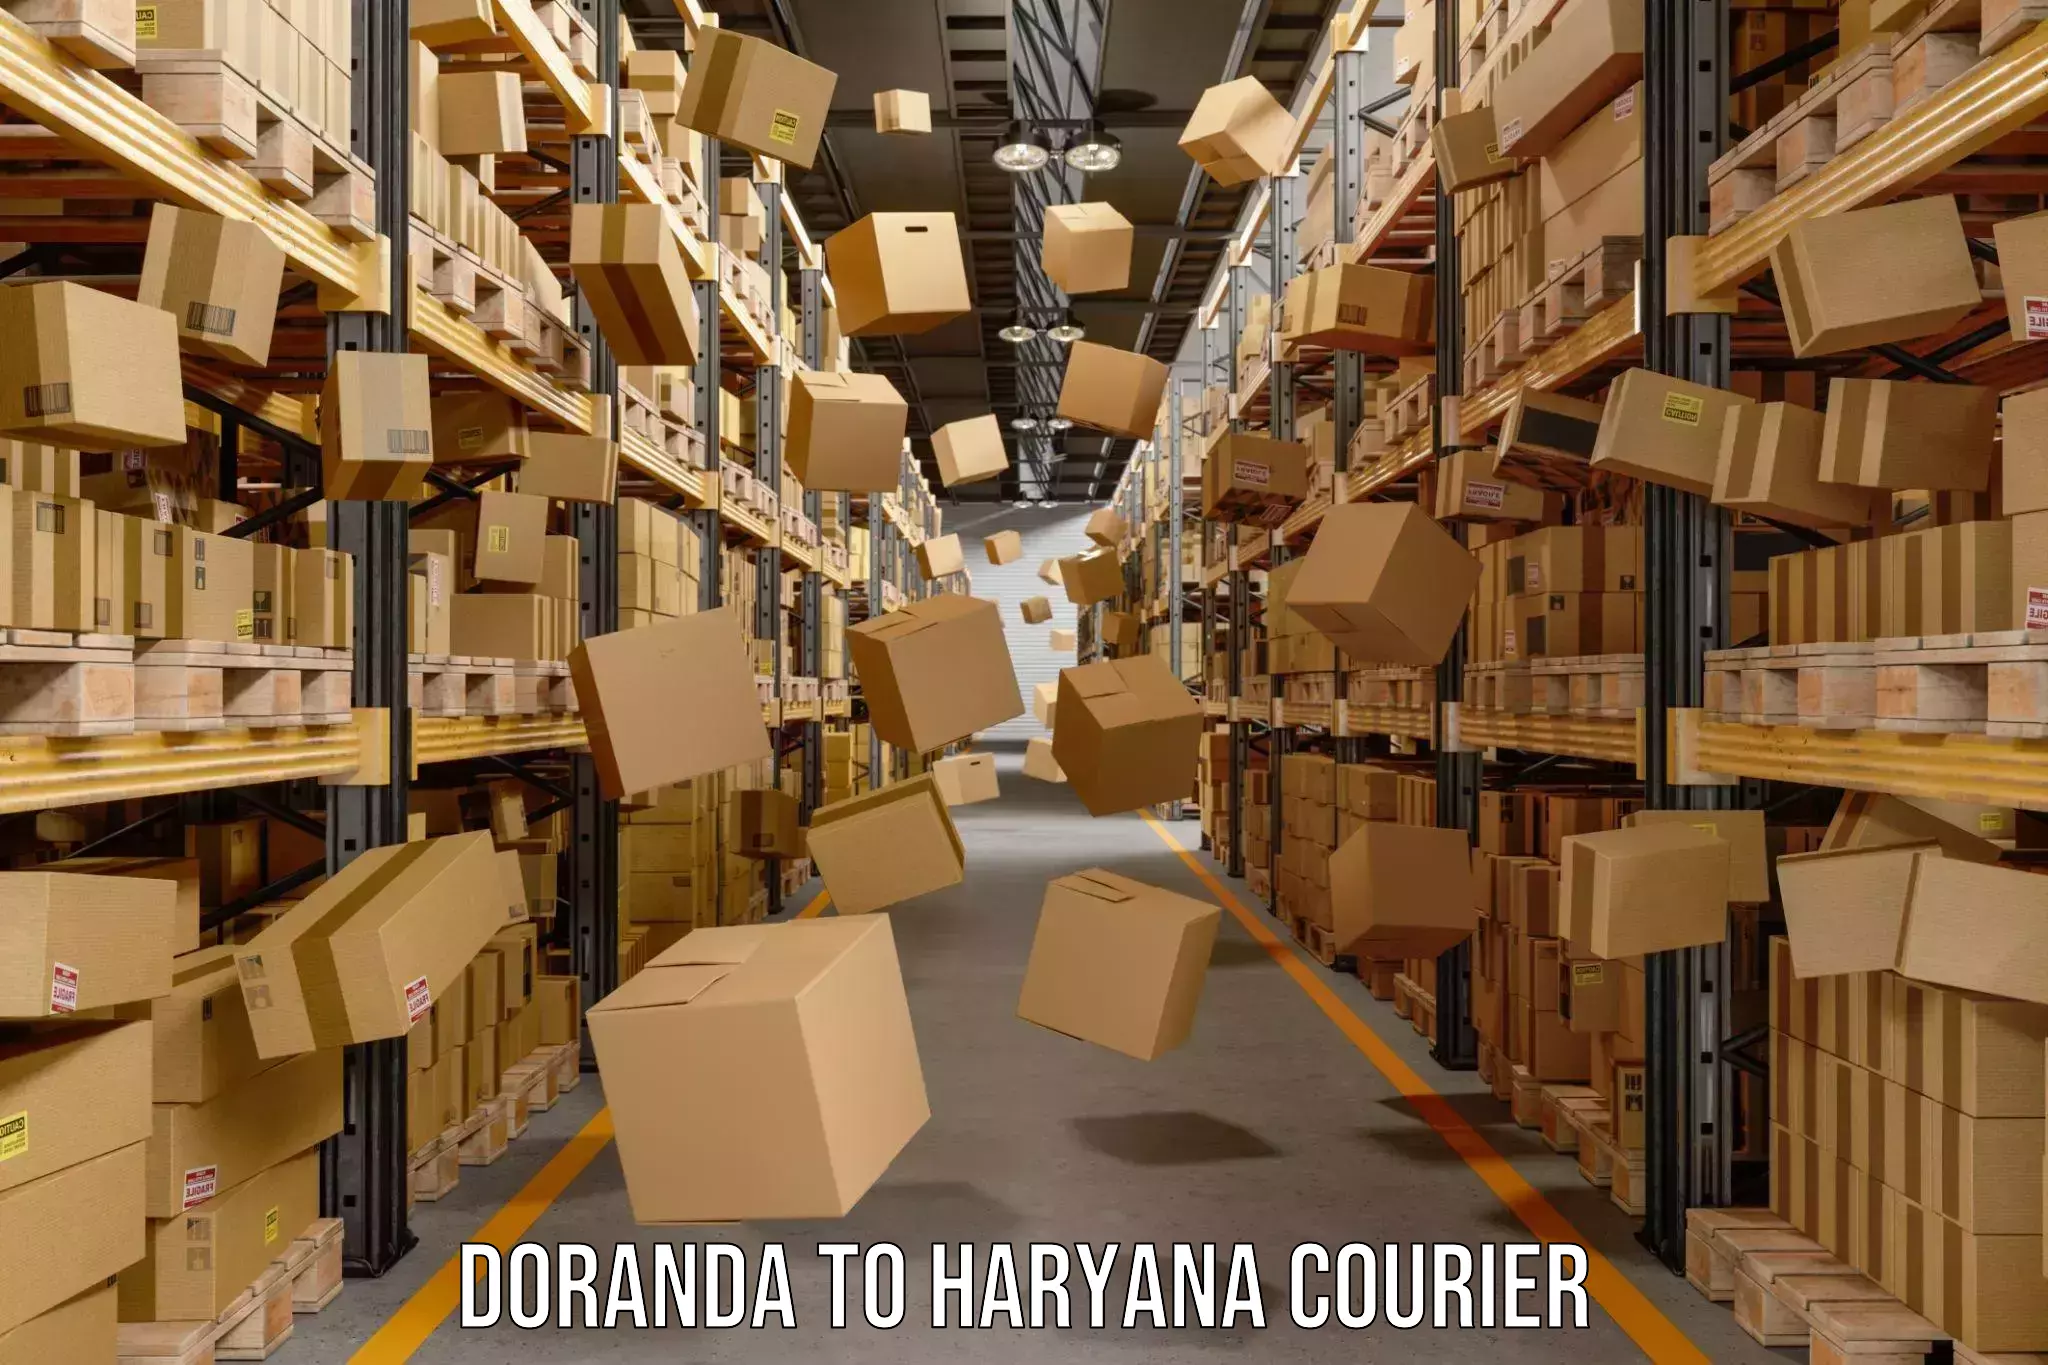 Courier service efficiency Doranda to Charkhari